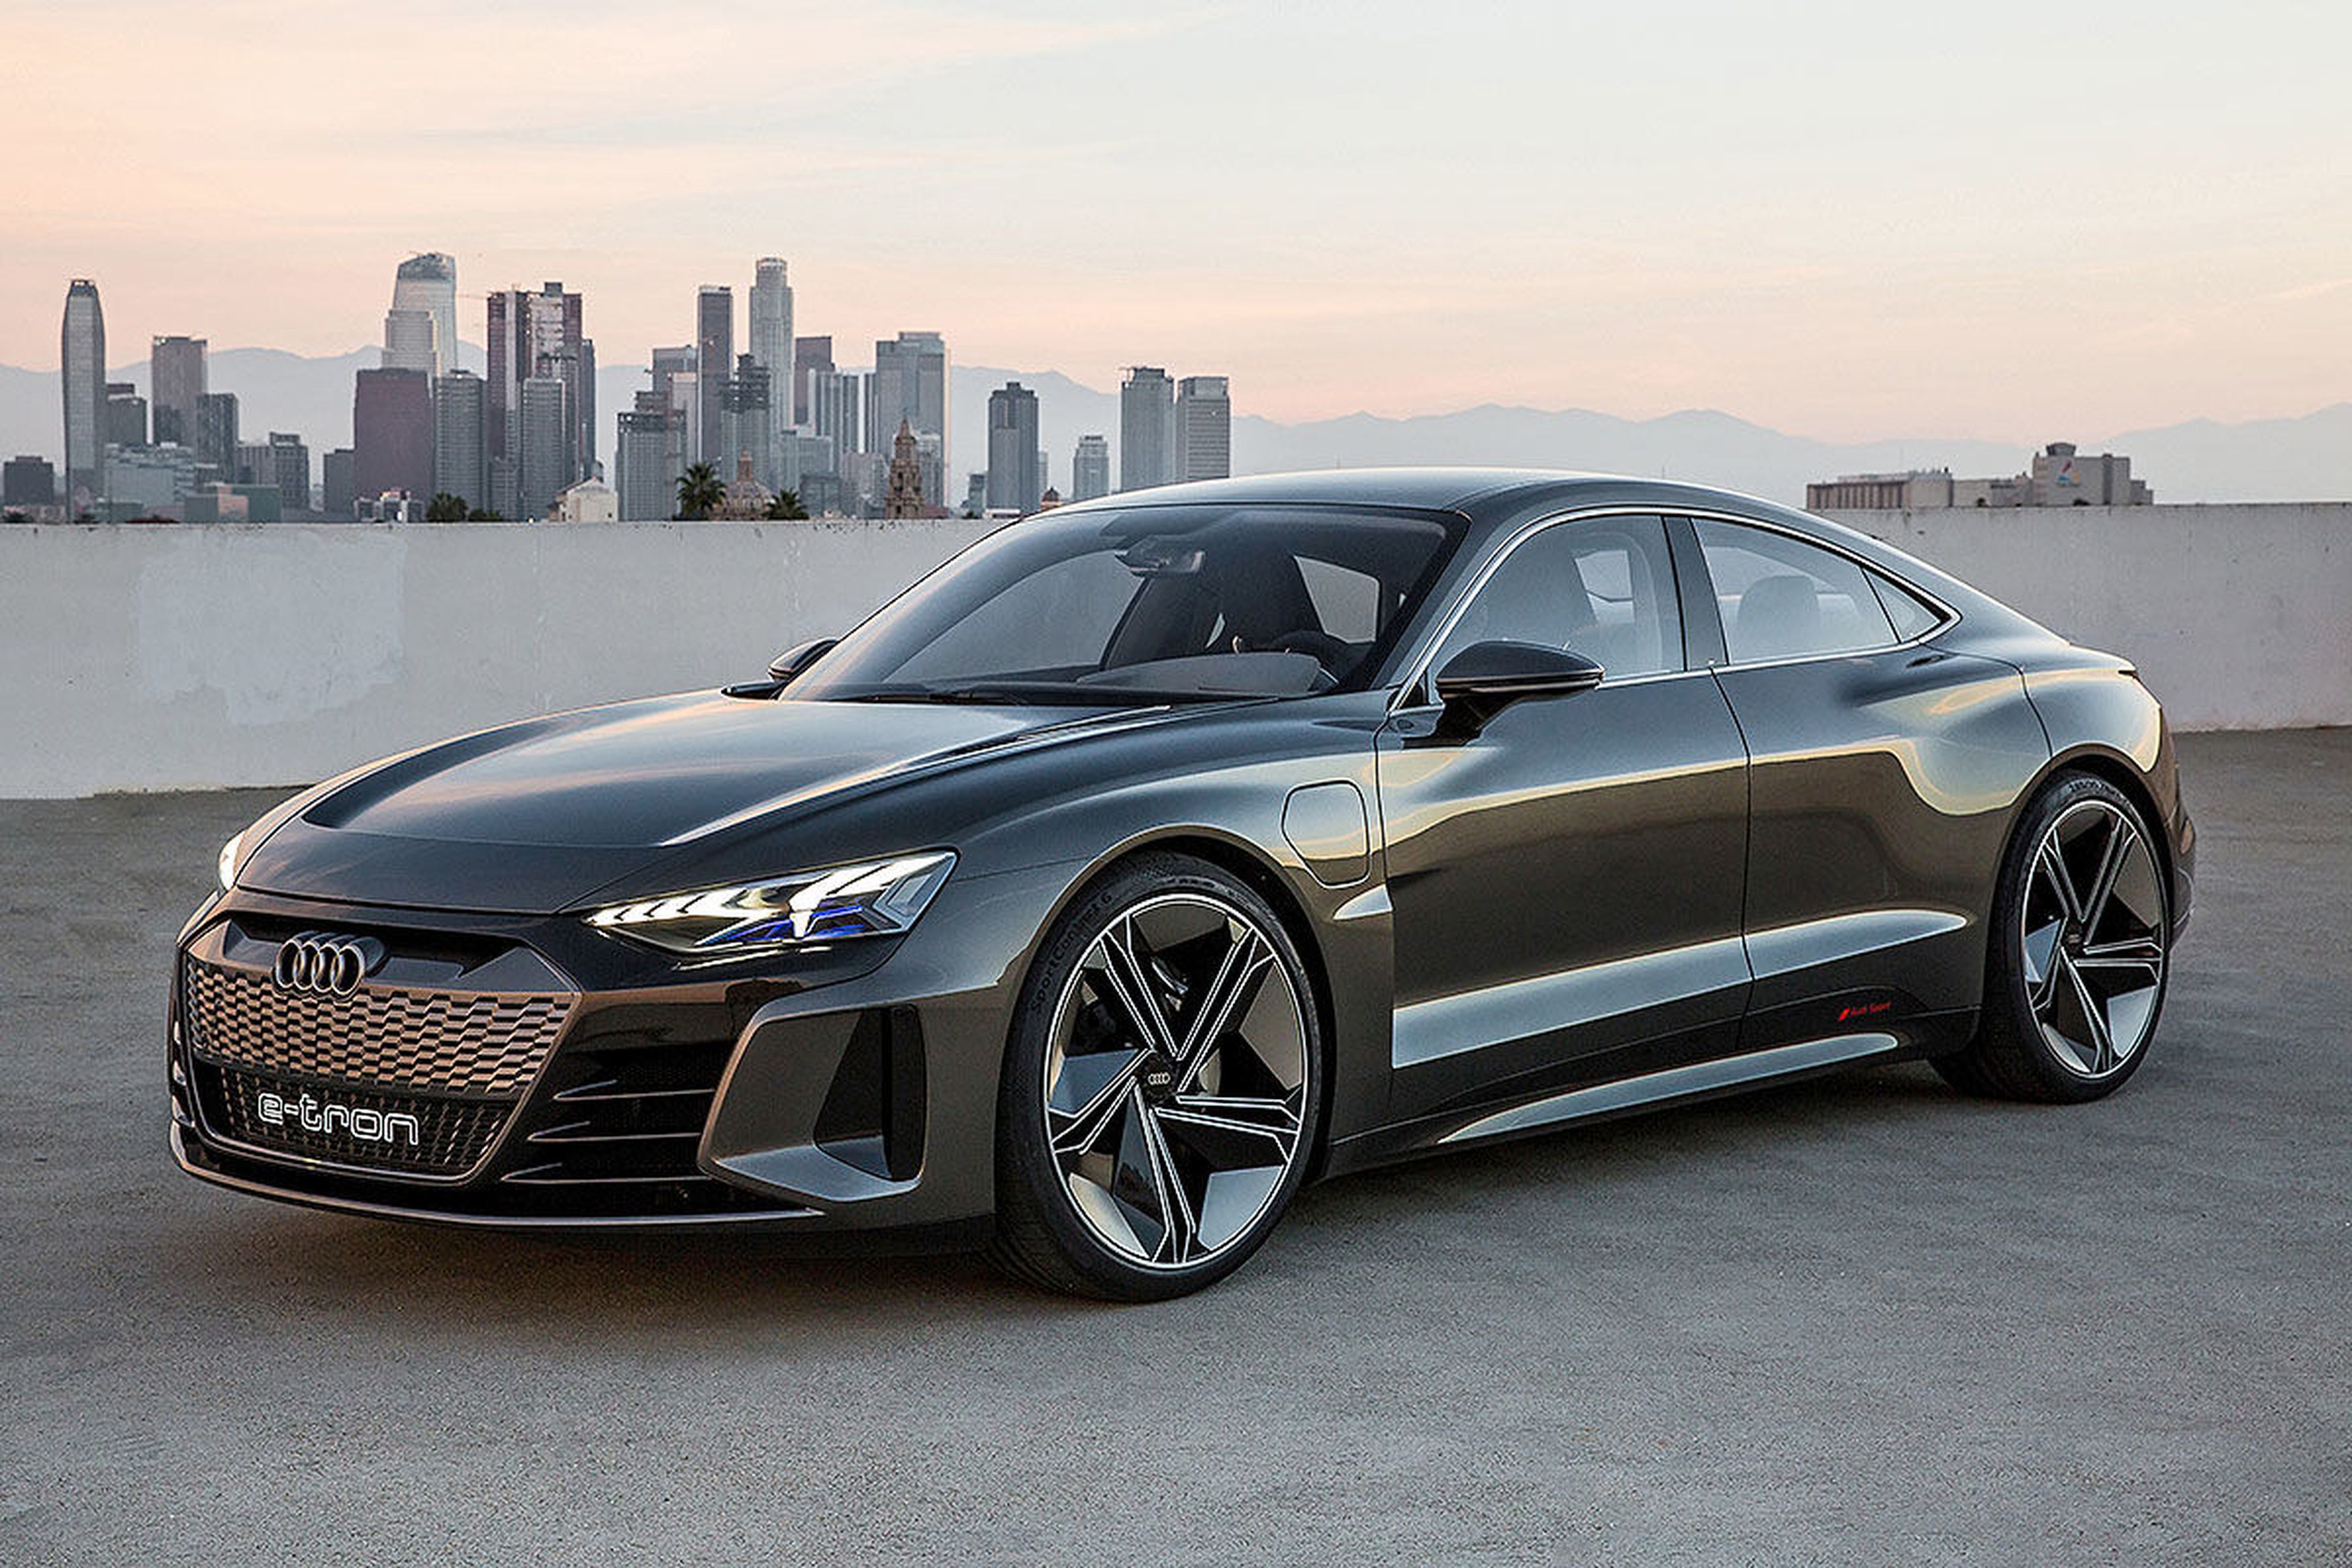 Audi G-tron